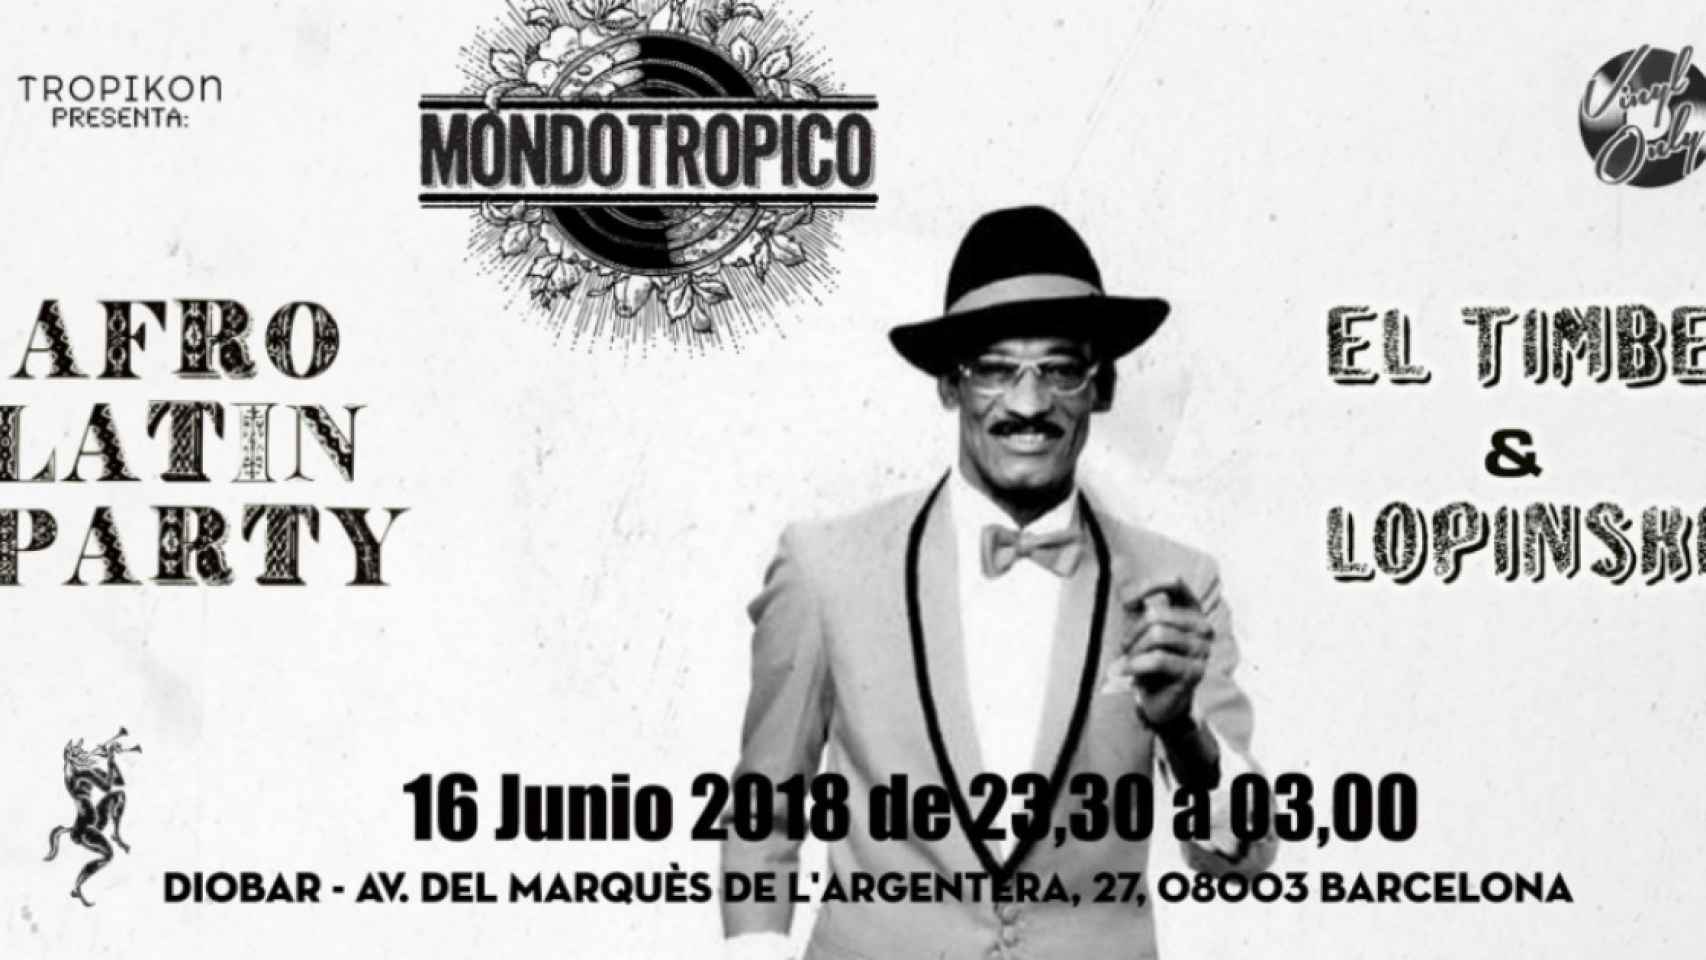 Mondotropico actúa en Diobar el 16 de junio / MONDOTROPICO